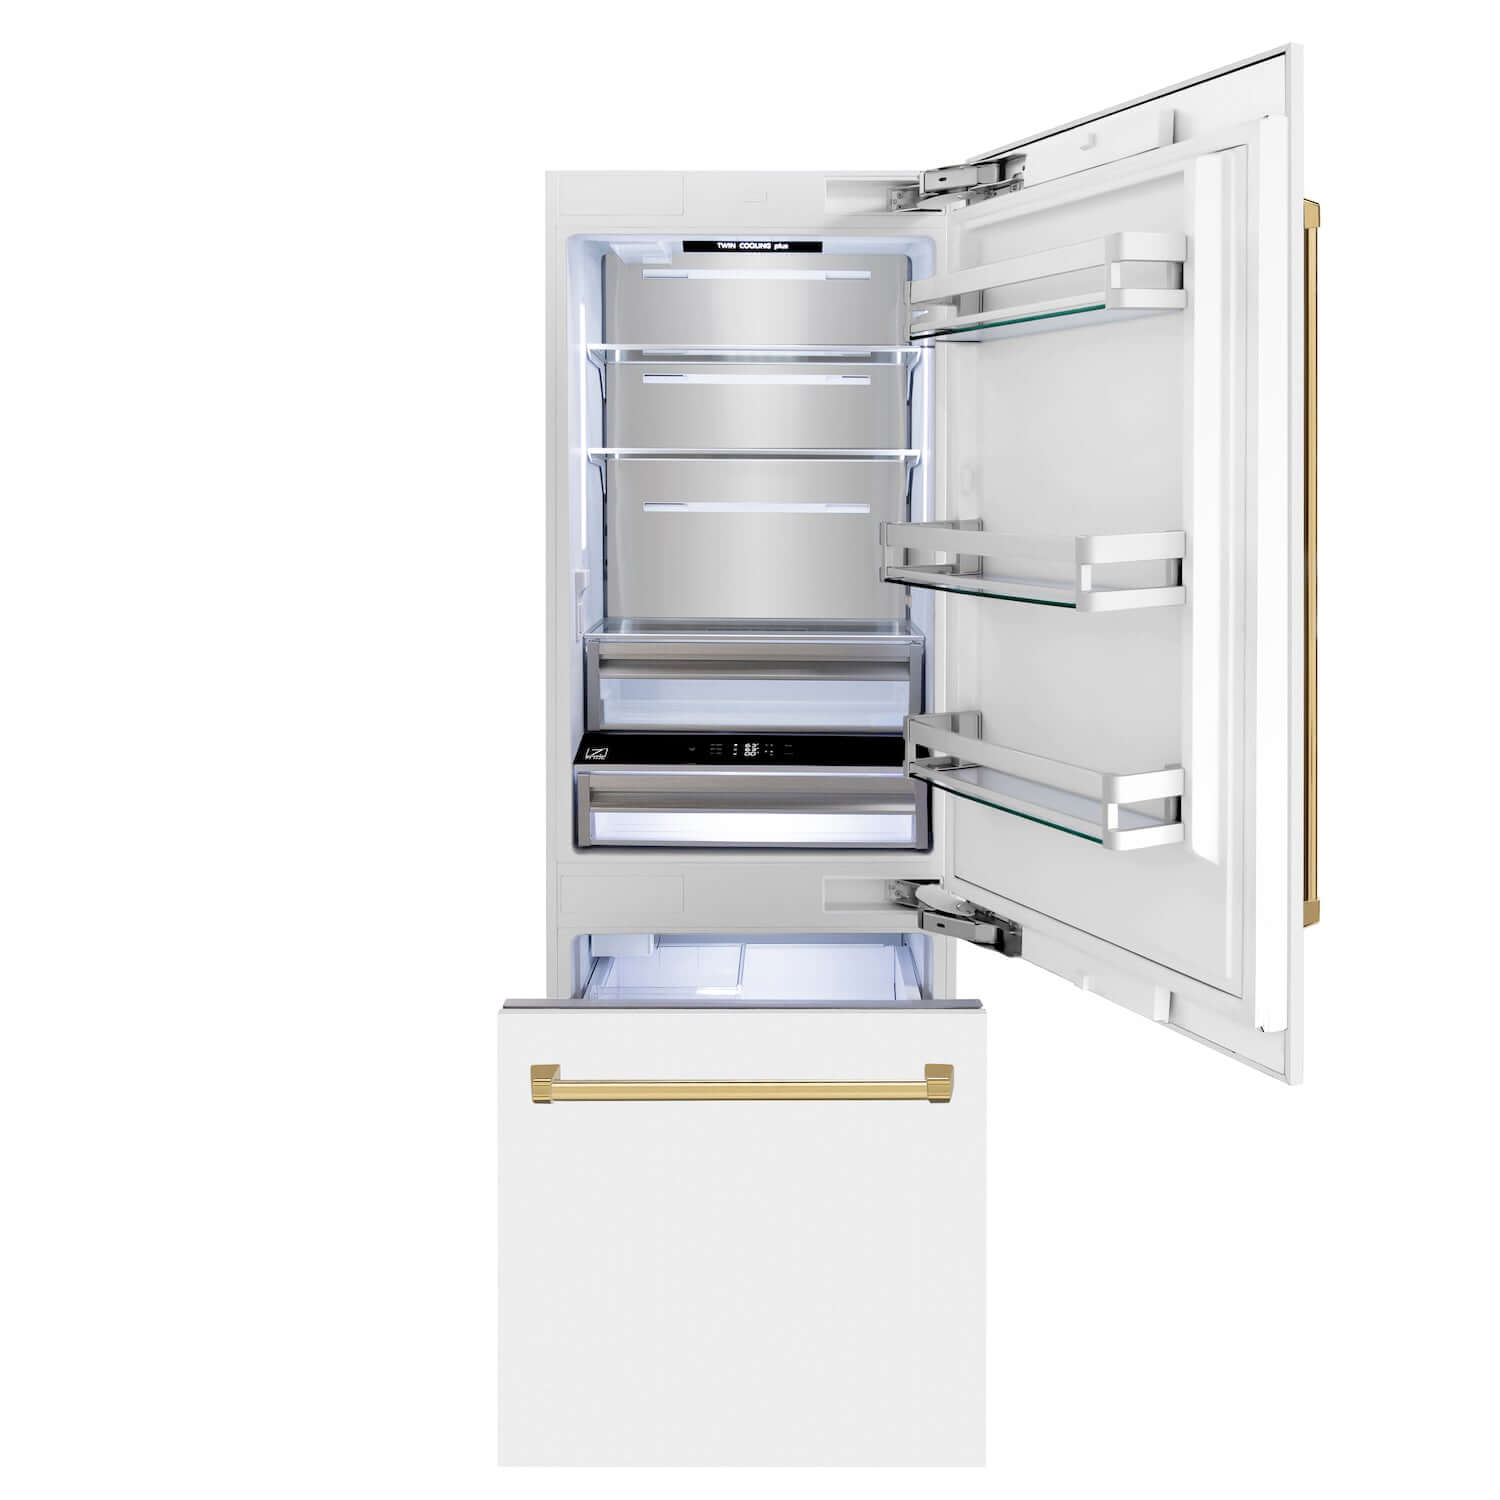 ZLINE Built-in Refrigerator (RBIV) front with doors open.